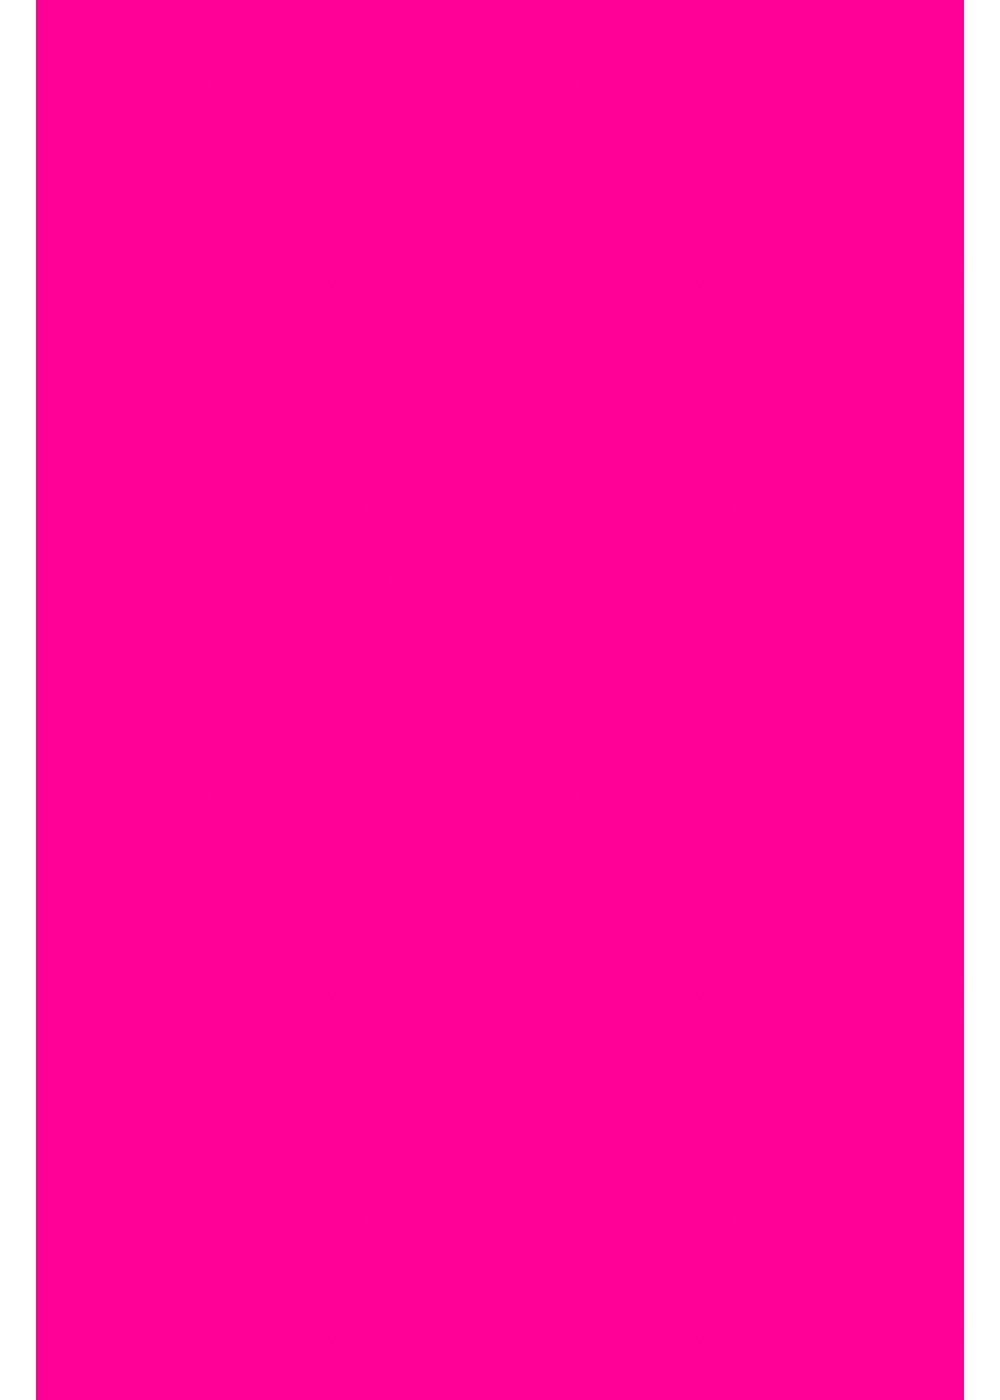 Hilltop Transparentpapier A4 Transferfolie/Textilfolie zum Aufbügeln - perfekt zum Plottern Neon Pink